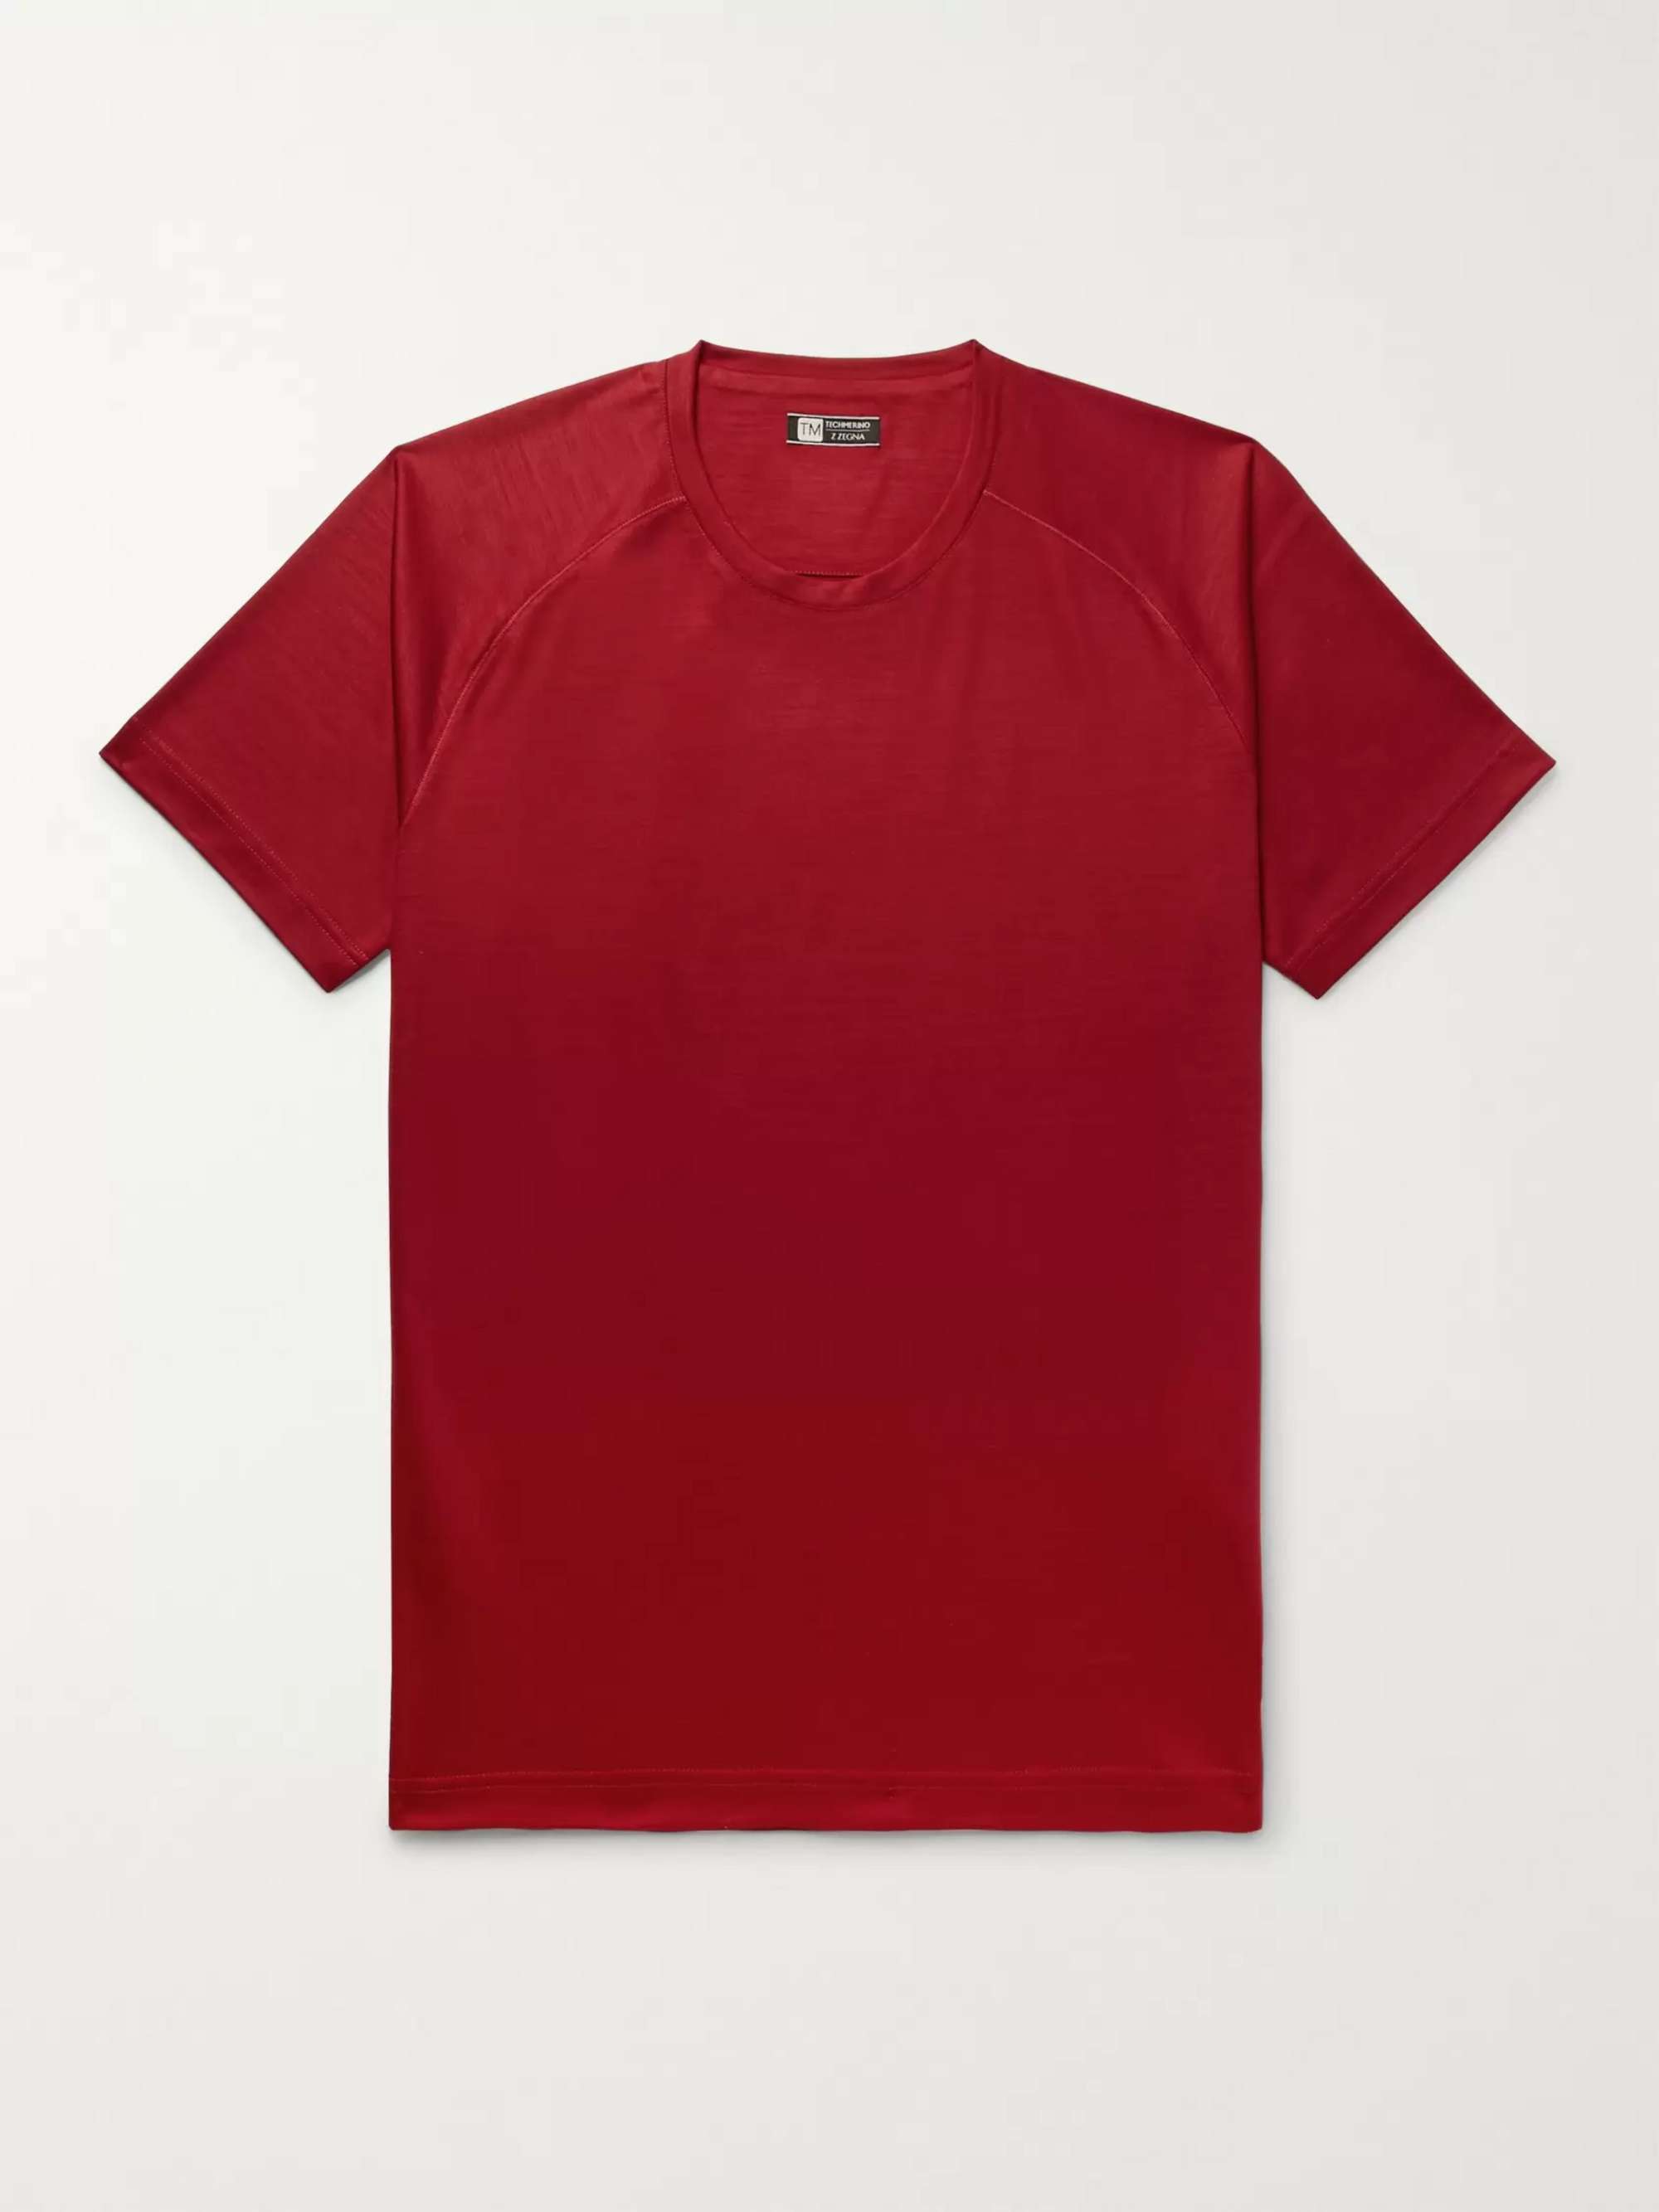 Z ZEGNA TECHMERINO Wool T-Shirt for Men | MR PORTER